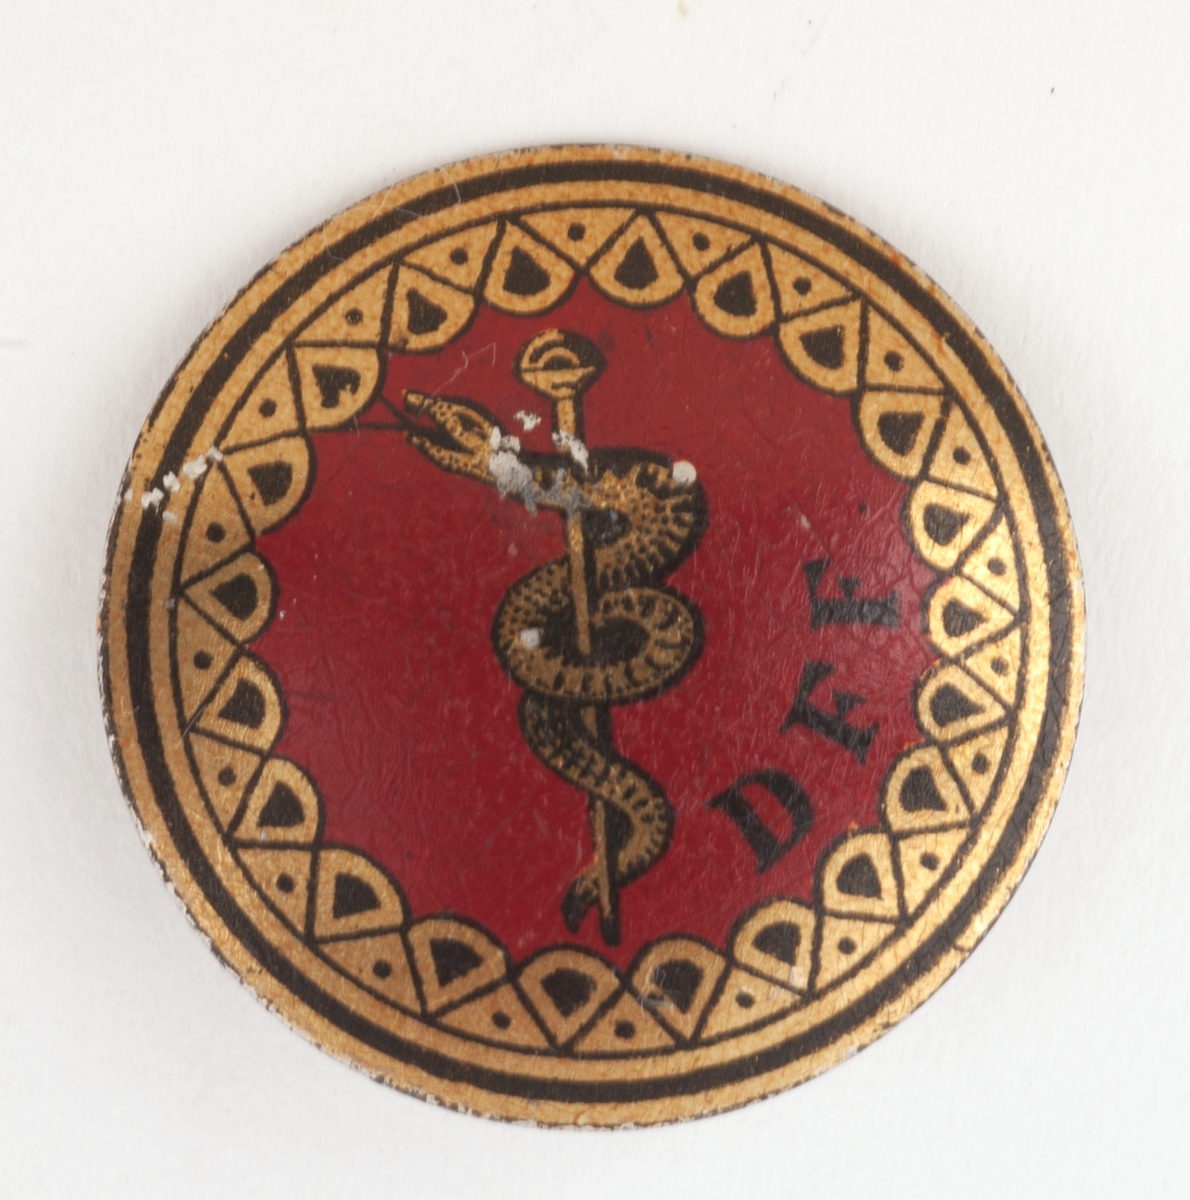 Rundt kongressmerke med logo (slange rundt en stav) festet til nål på baksiden